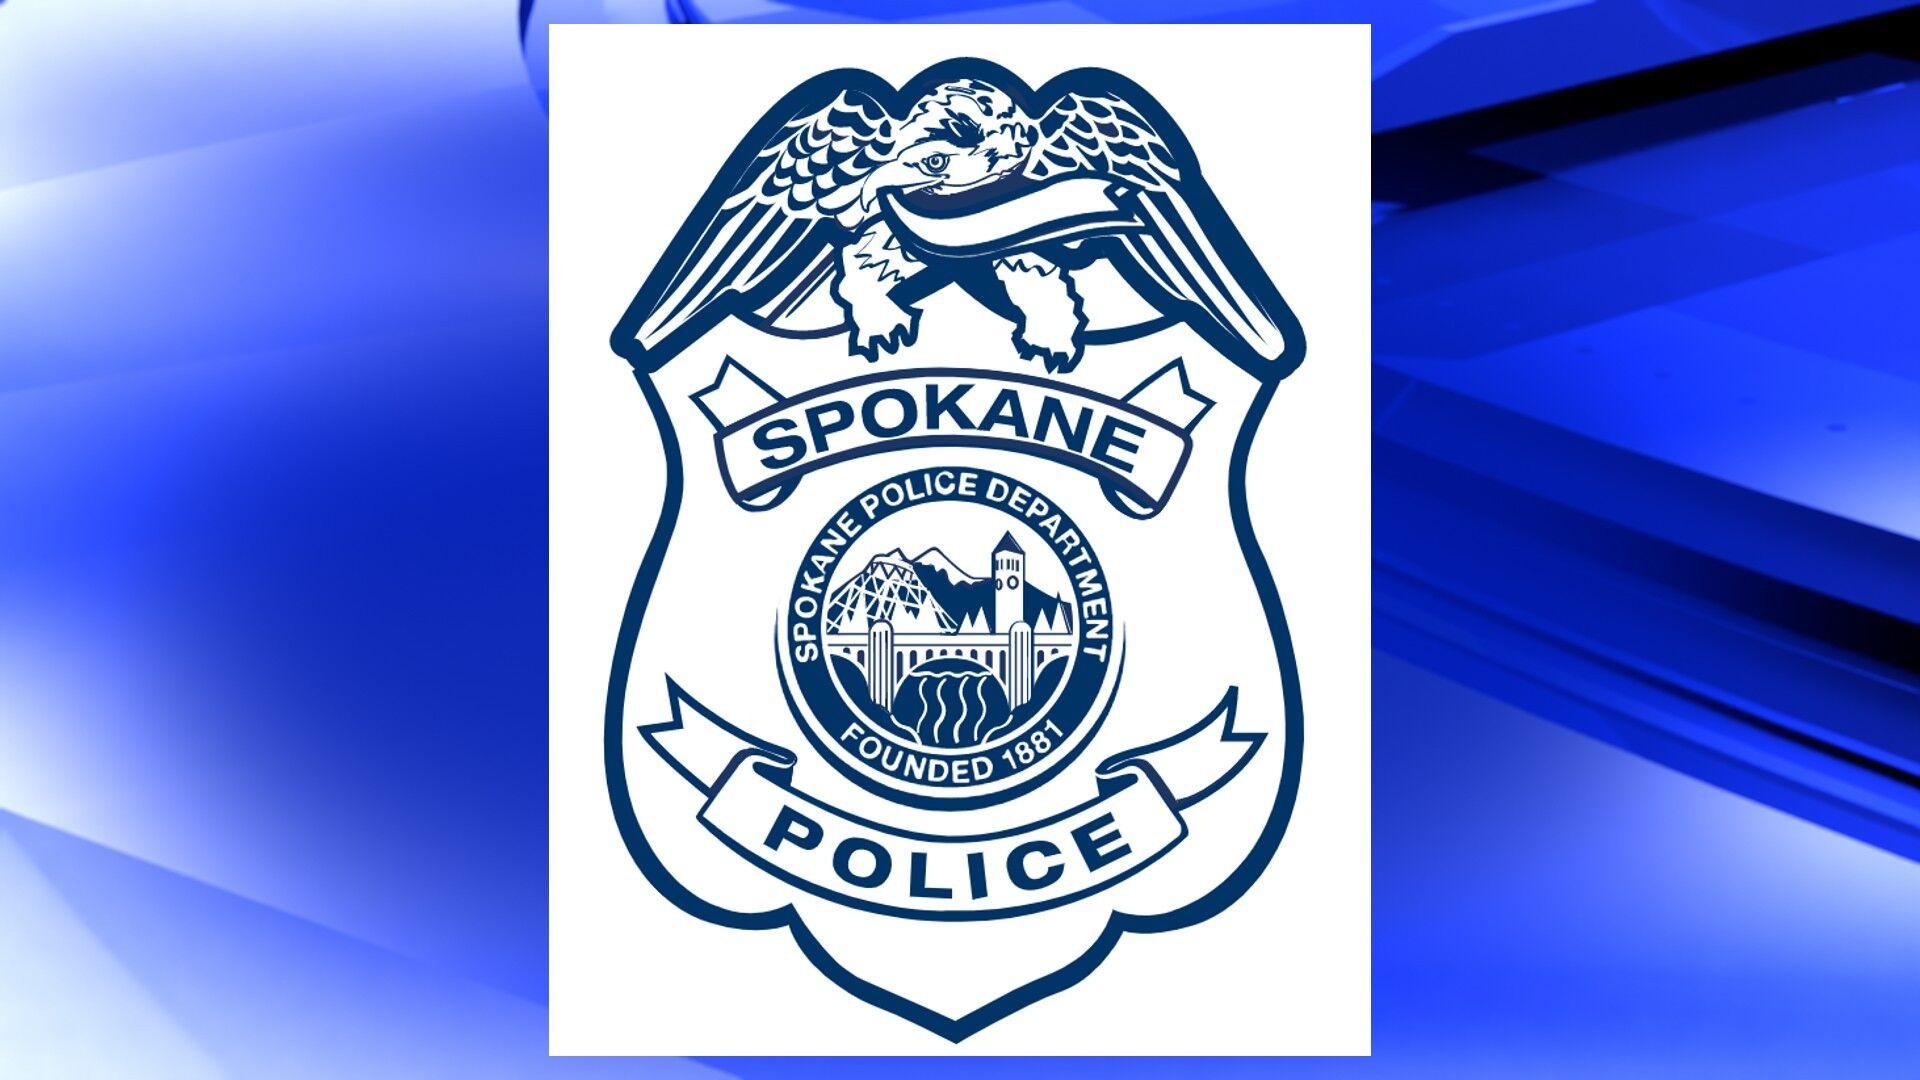 Spokane Police Department Logo